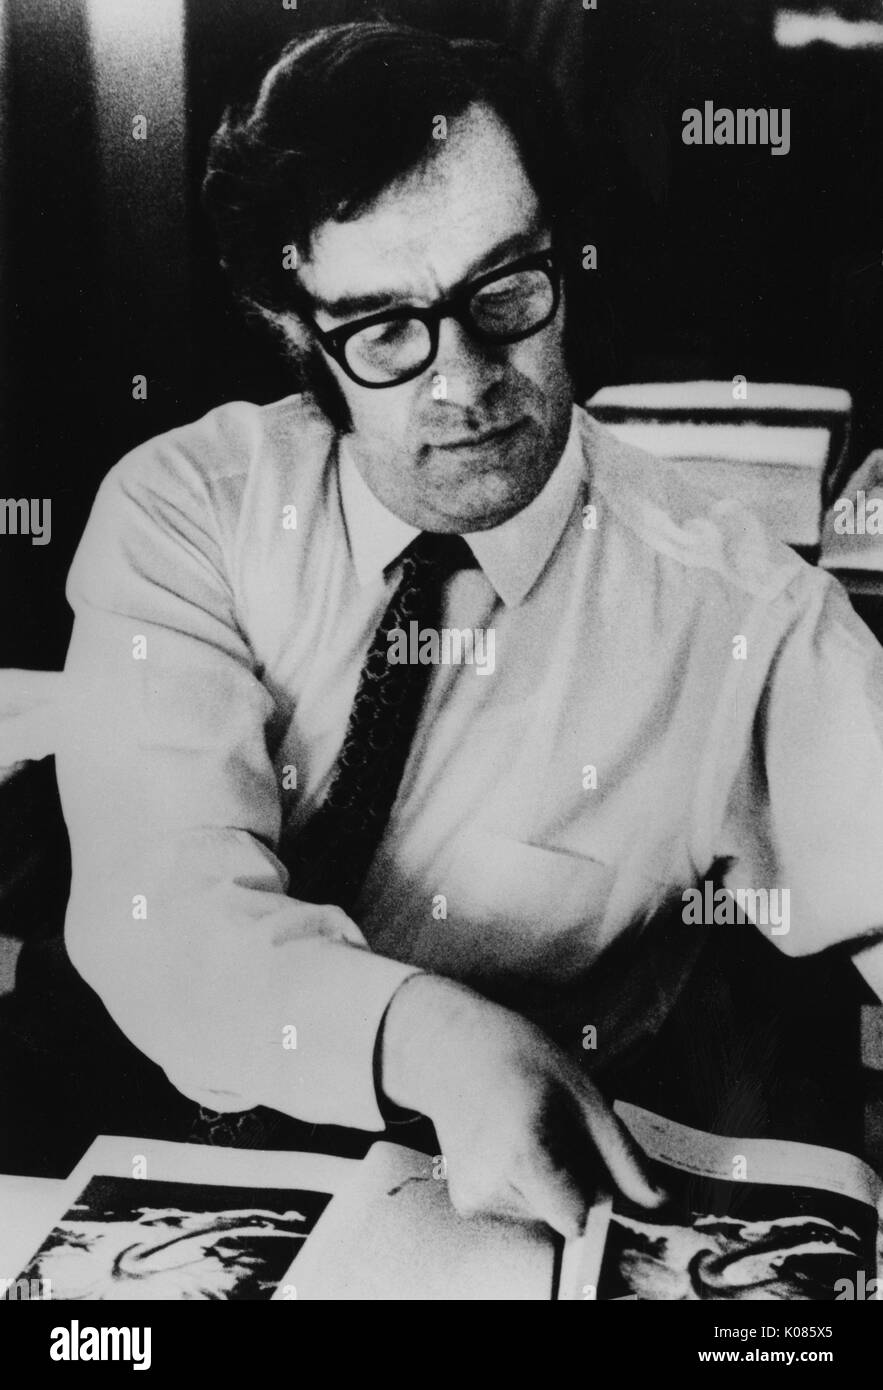 Portrait de demi-longueur auteur Isaac Asimov, portant une chemise blanche, assis sur une table, feuilleter les pages d'un livre, portant des lunettes et une cravate à motifs, avec une expression du visage grave, 1970. Banque D'Images